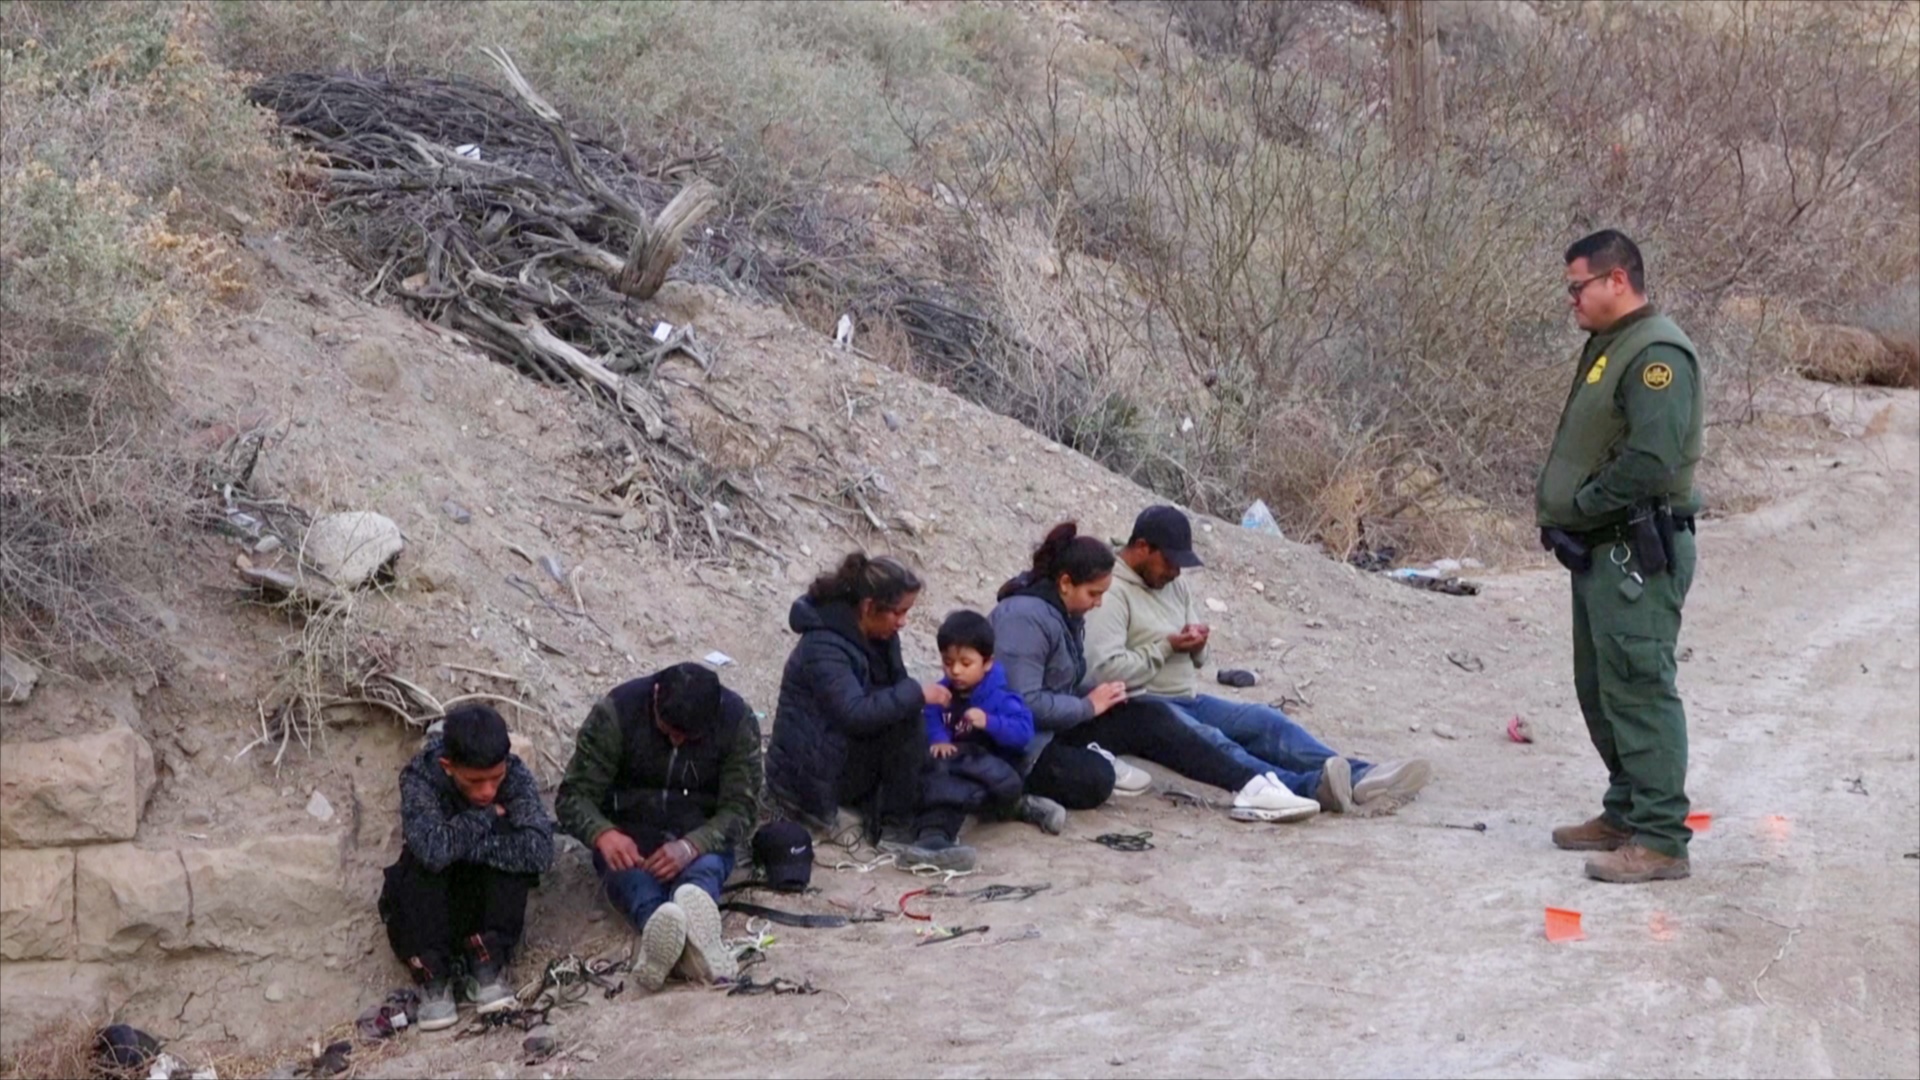 В Эль-Пасо рядом с Мексикой задерживают всё больше нелегальных мигрантов